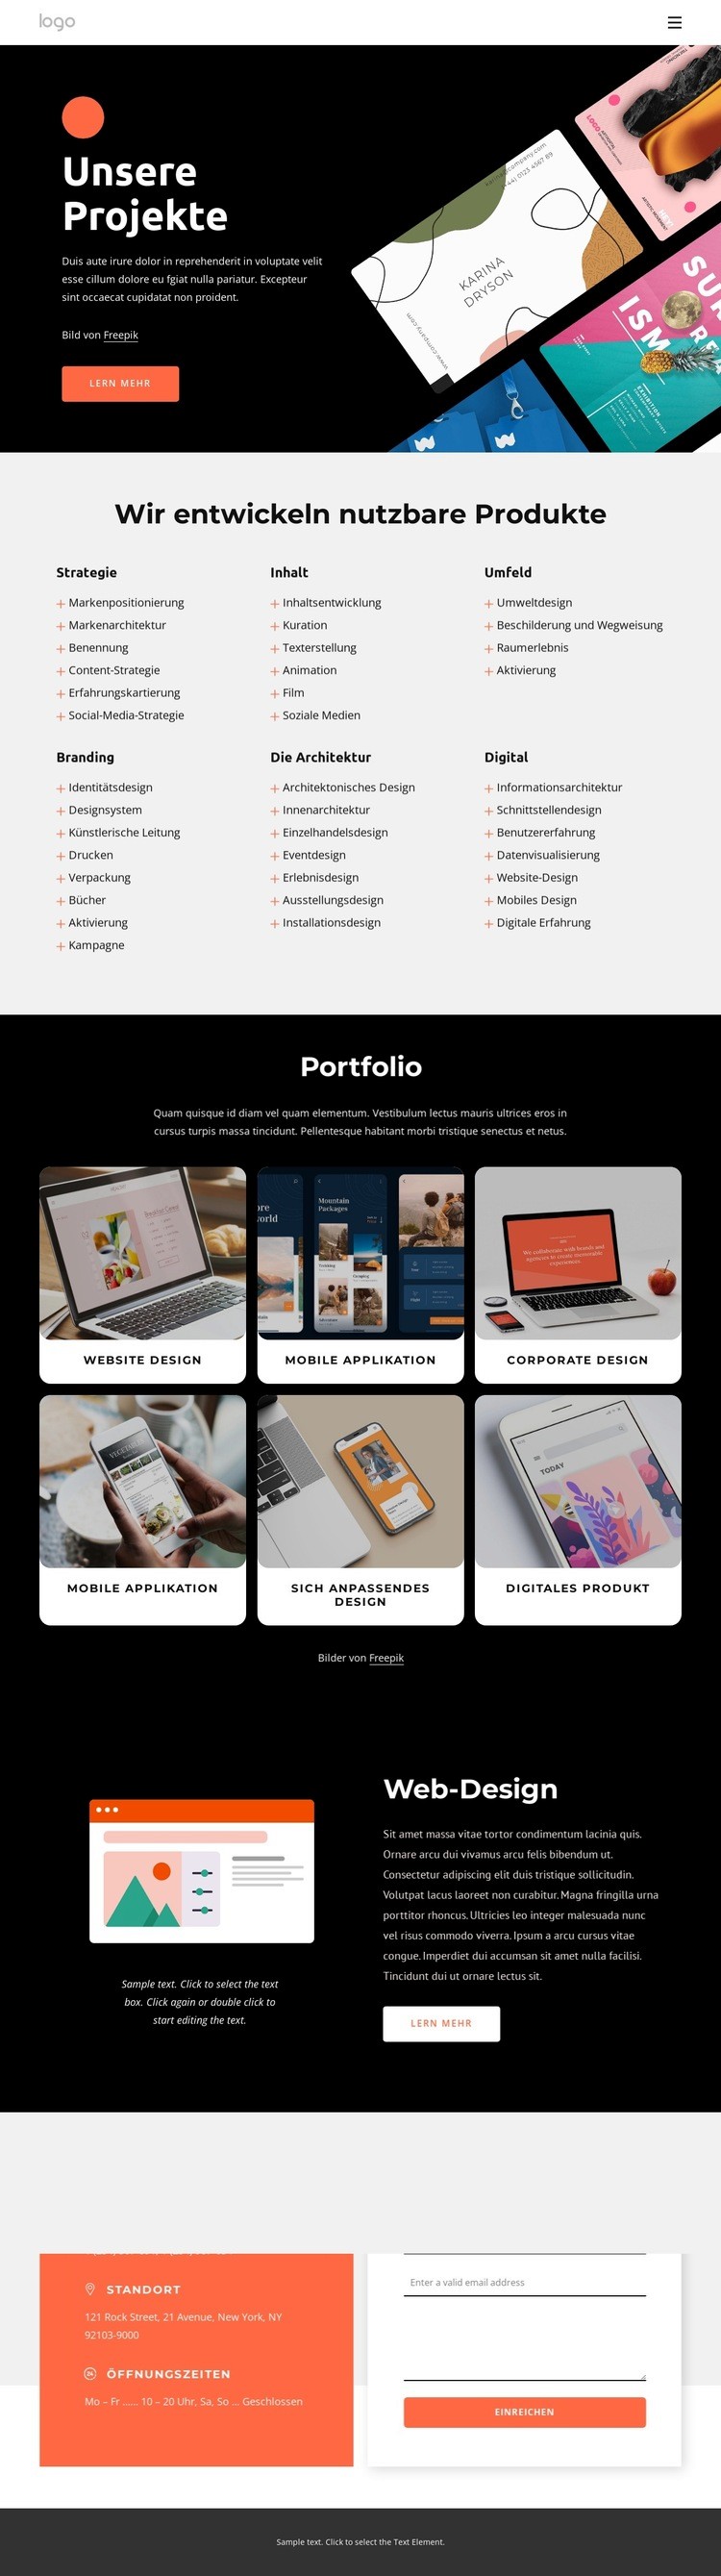 Unser kreatives Portfolio Website-Modell